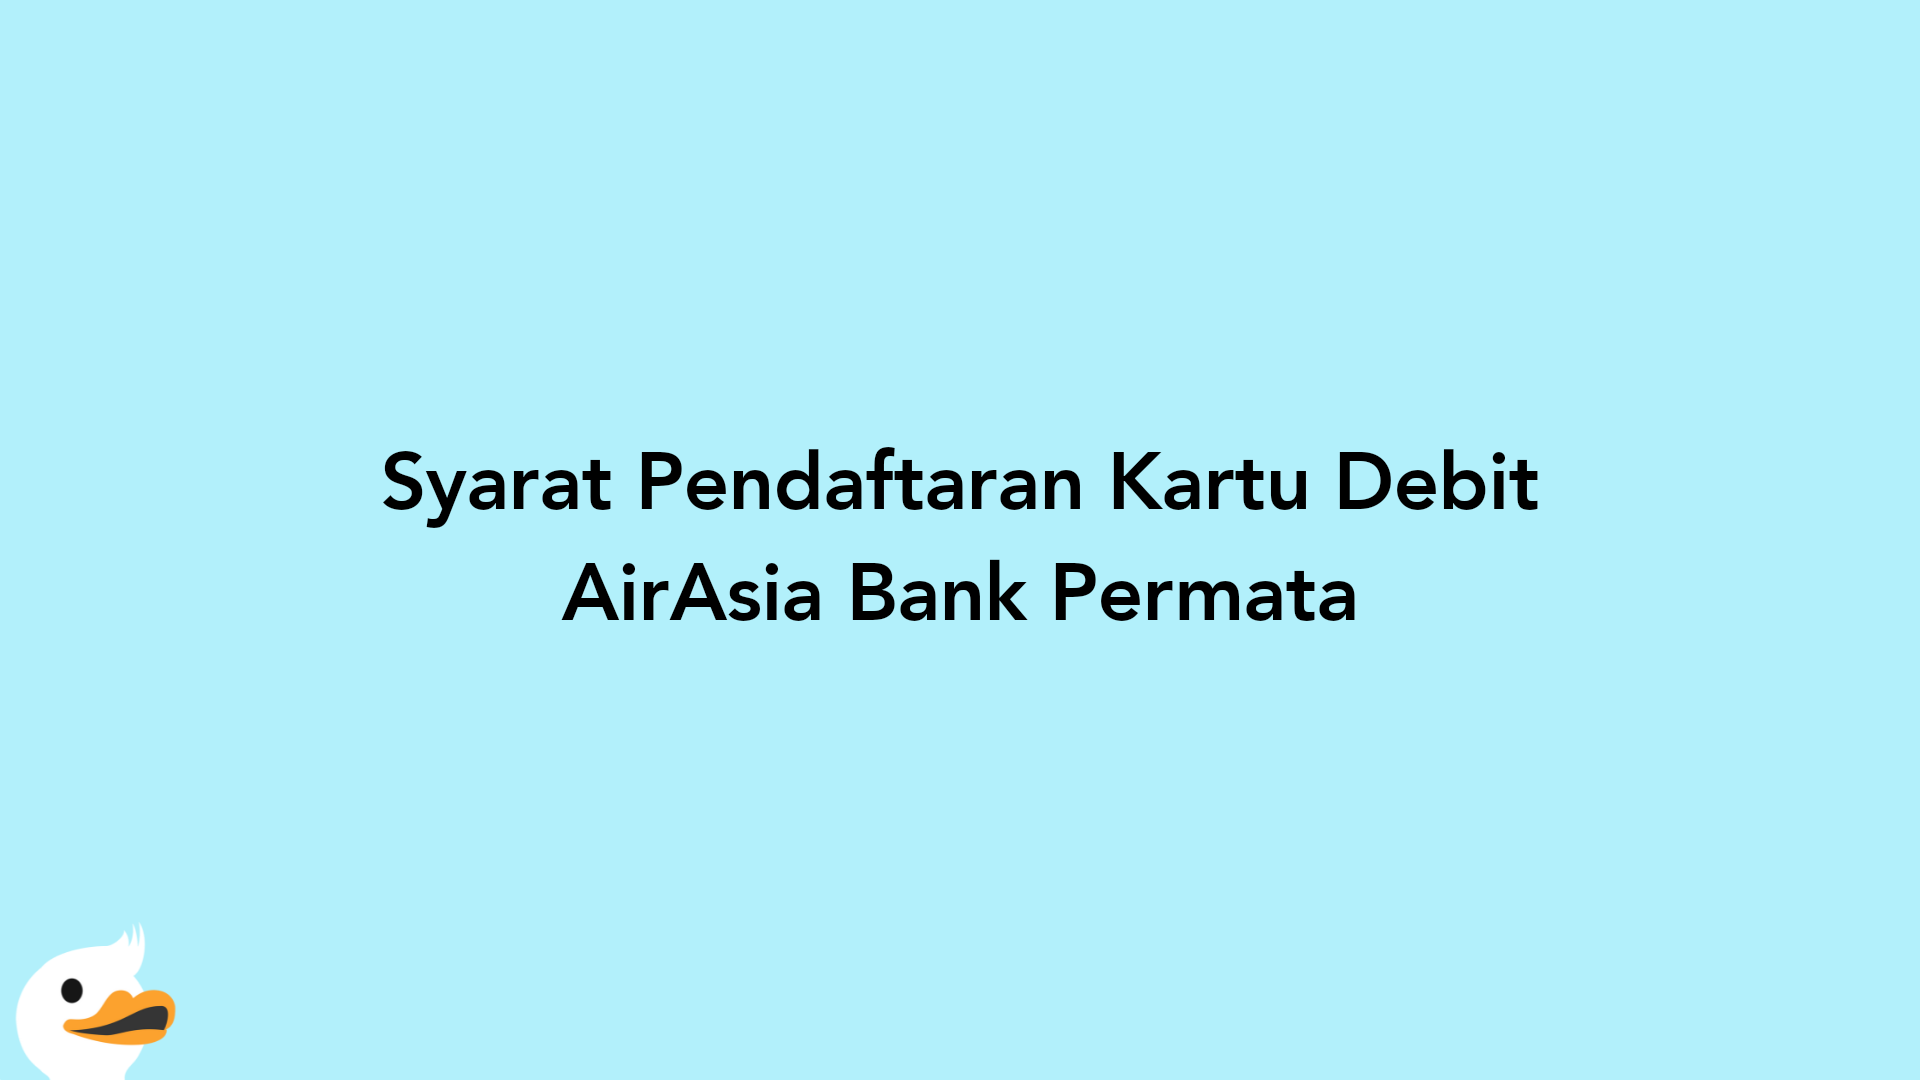 Syarat Pendaftaran Kartu Debit AirAsia Bank Permata